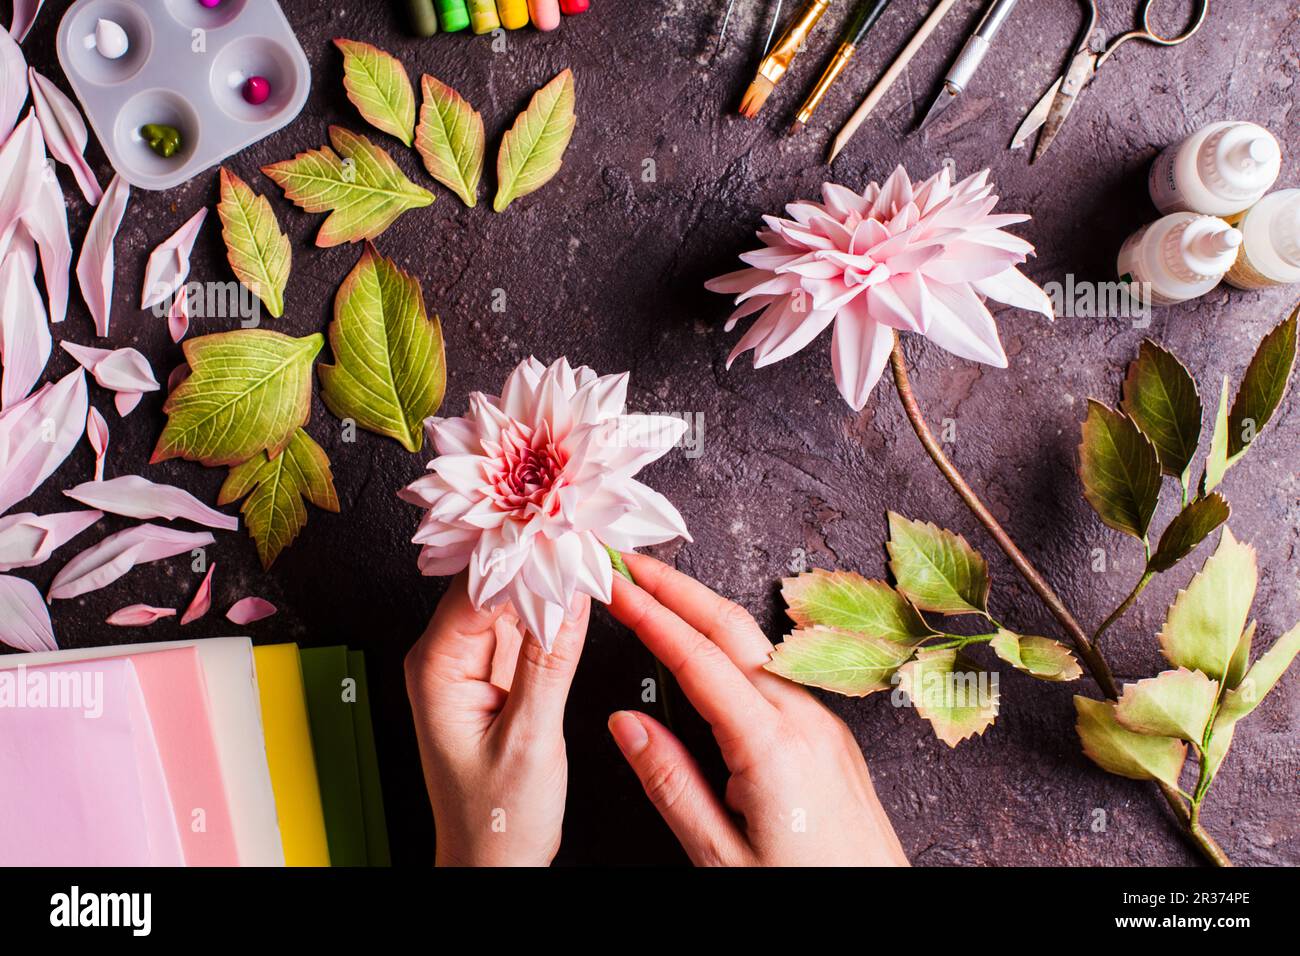 Handgemachte DIY Herstellung realistische Blumen aus Schaumstoff  Stockfotografie - Alamy